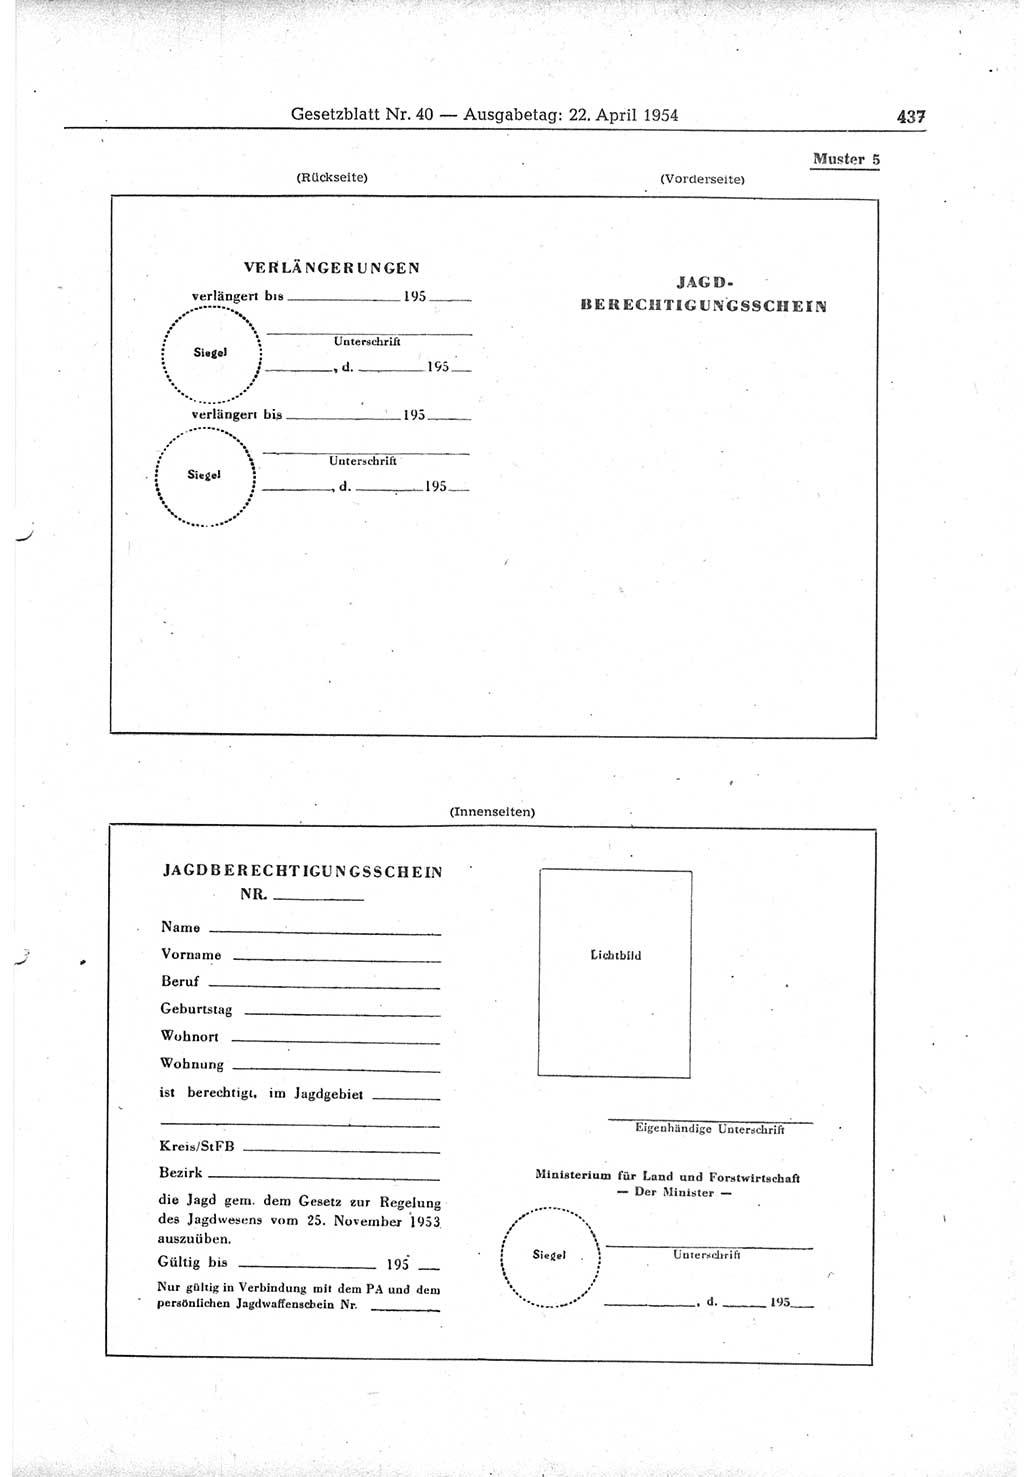 Gesetzblatt (GBl.) der Deutschen Demokratischen Republik (DDR) 1954, Seite 437 (GBl. DDR 1954, S. 437)